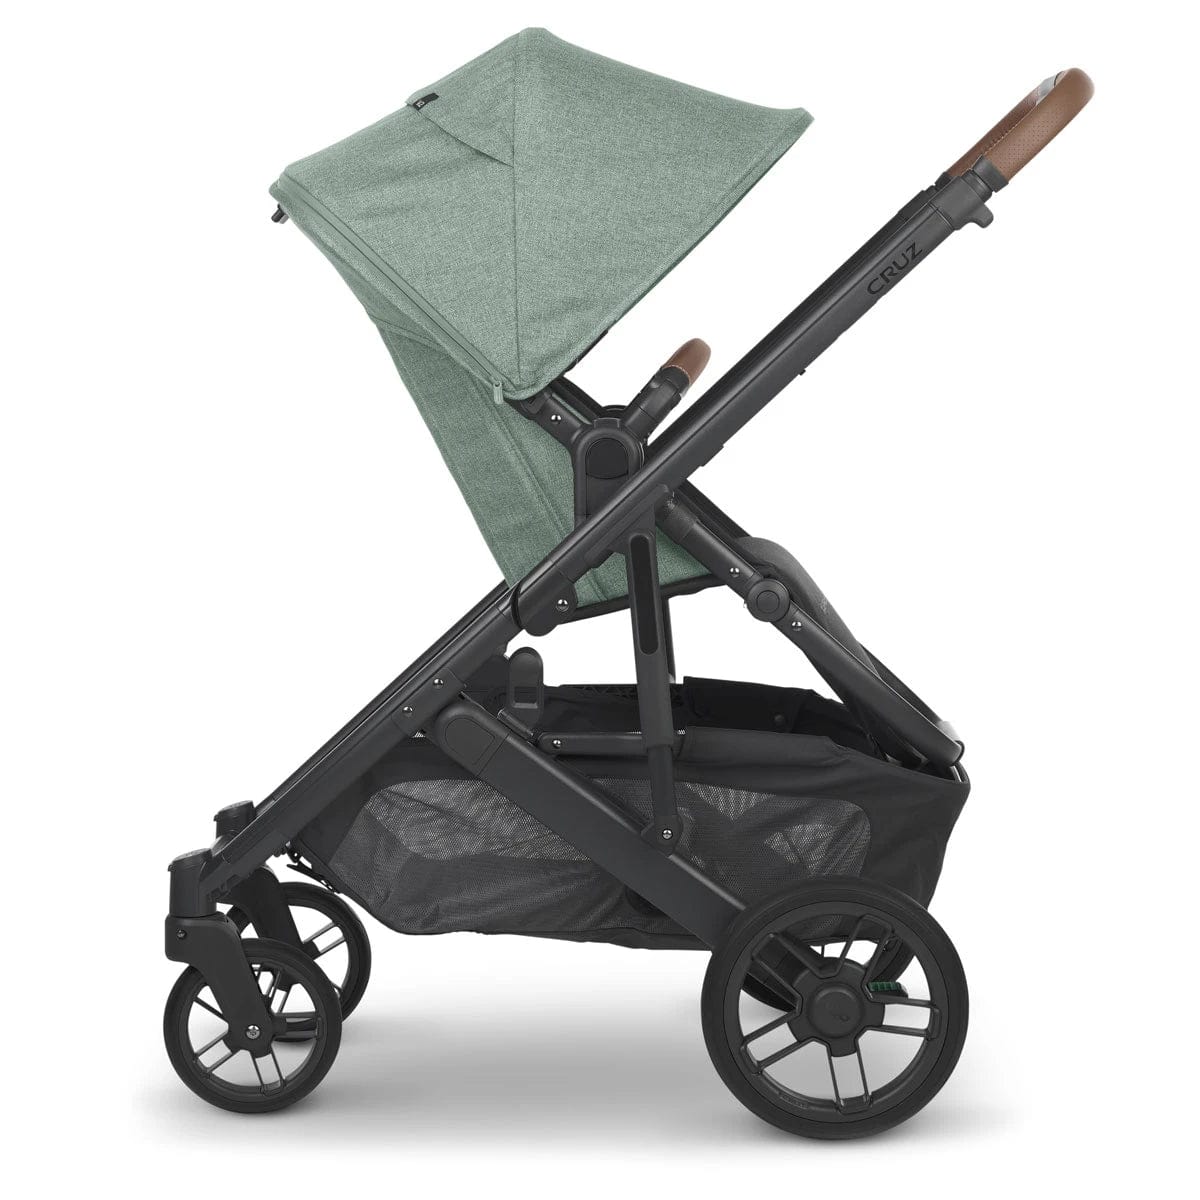 UPPAbaby stroller UPPAbaby CRUZ V2 Stroller - Gwen (Green Melange/Carbon/Saddle Leather)